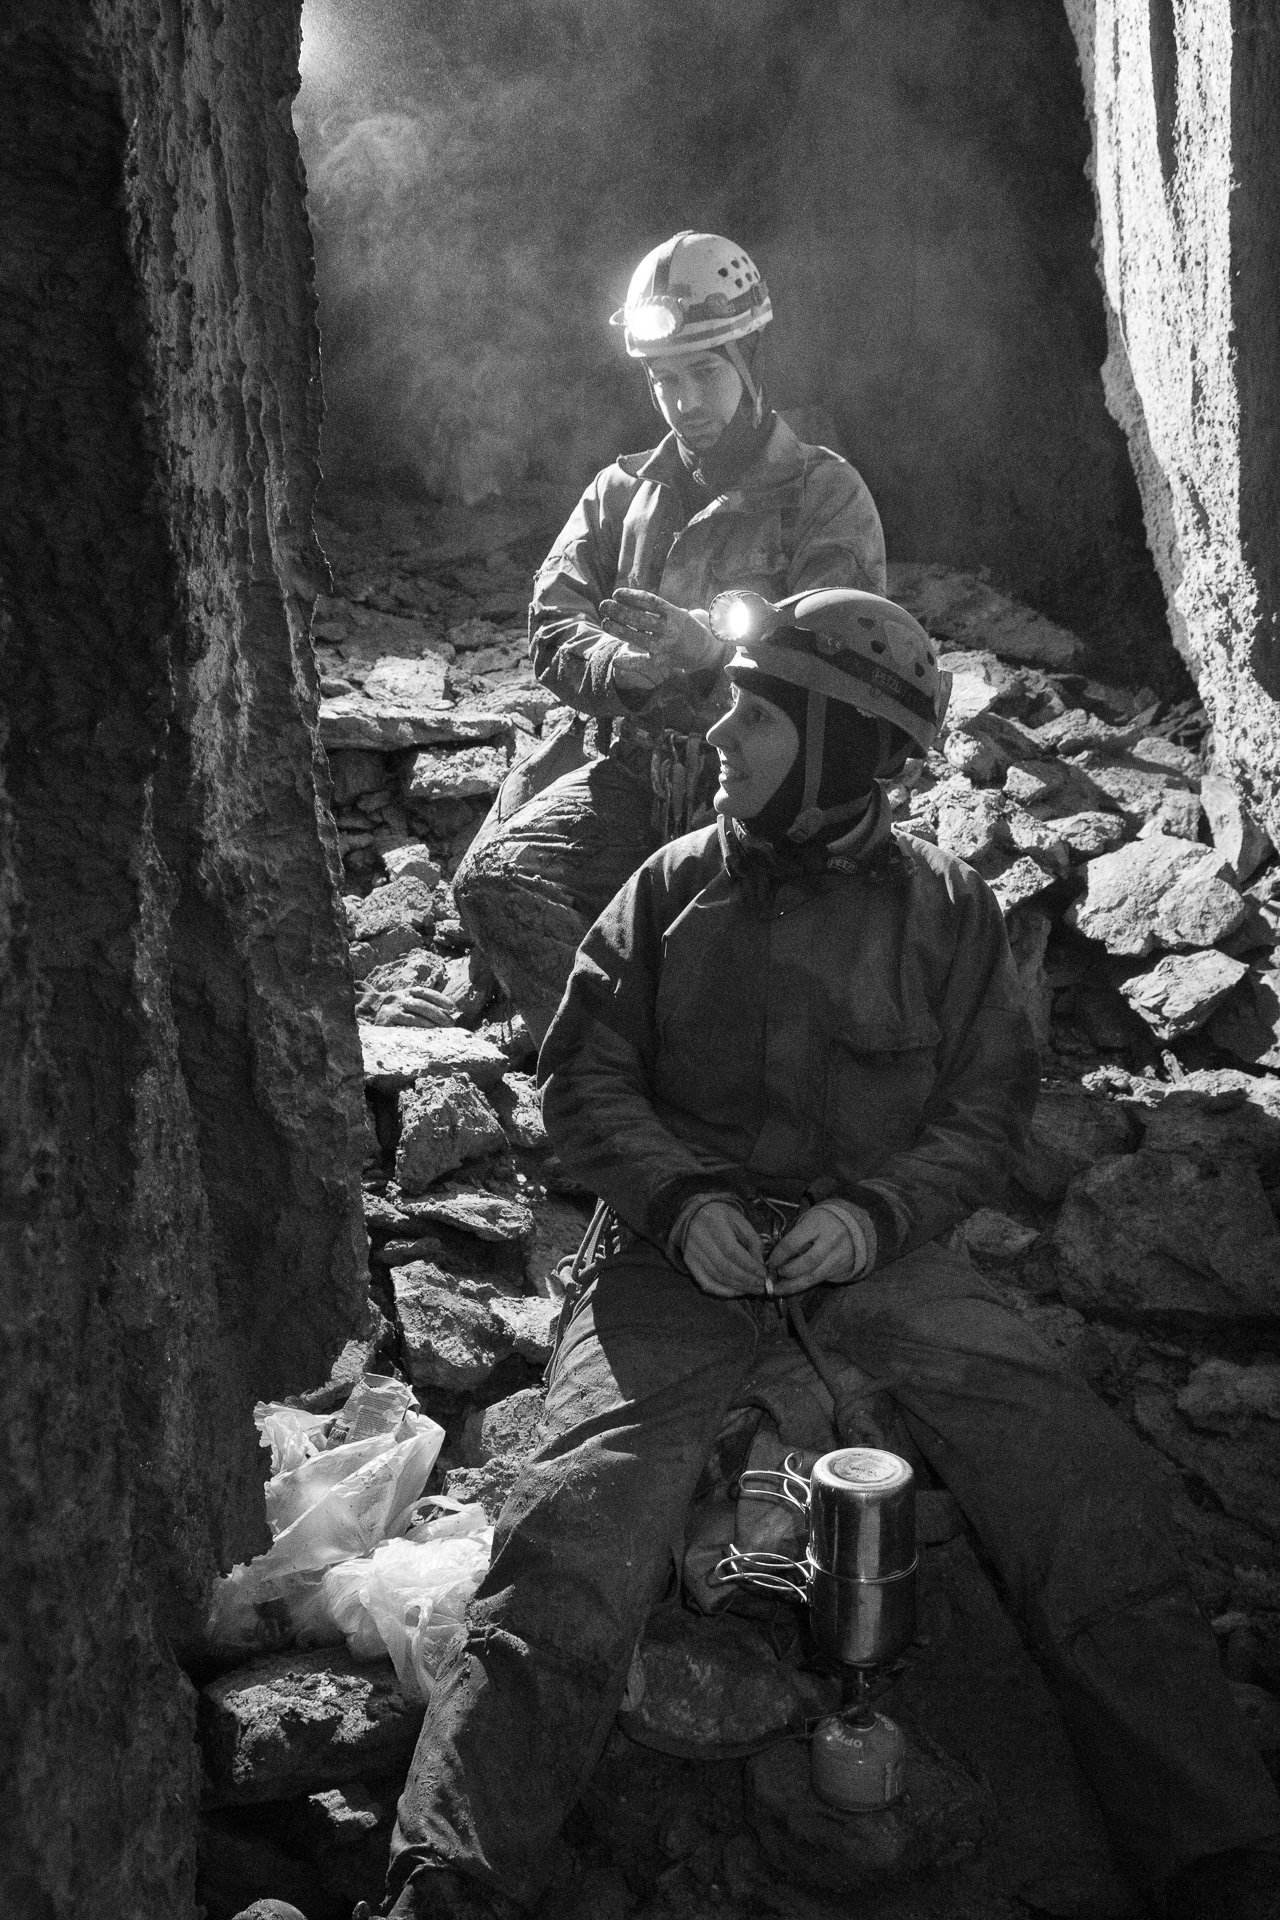 Zsófi és Lacc a Keleti-köteles végén az akna alján (Maucha Gergő fényképe)